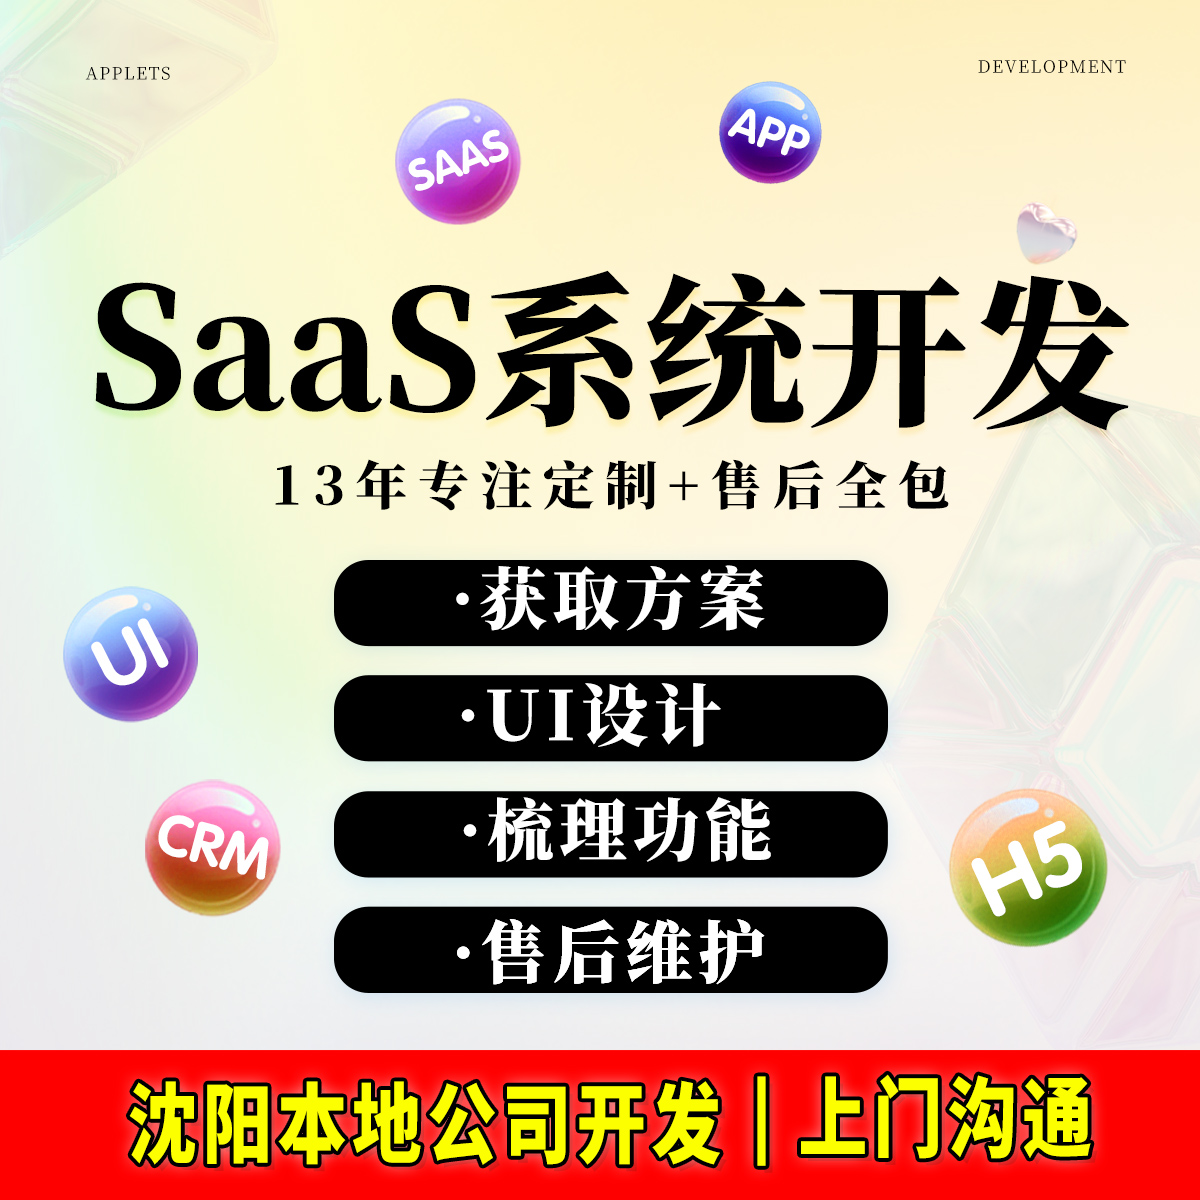 SaaS系统小程序APP软件网站开发建设在线教育进销存